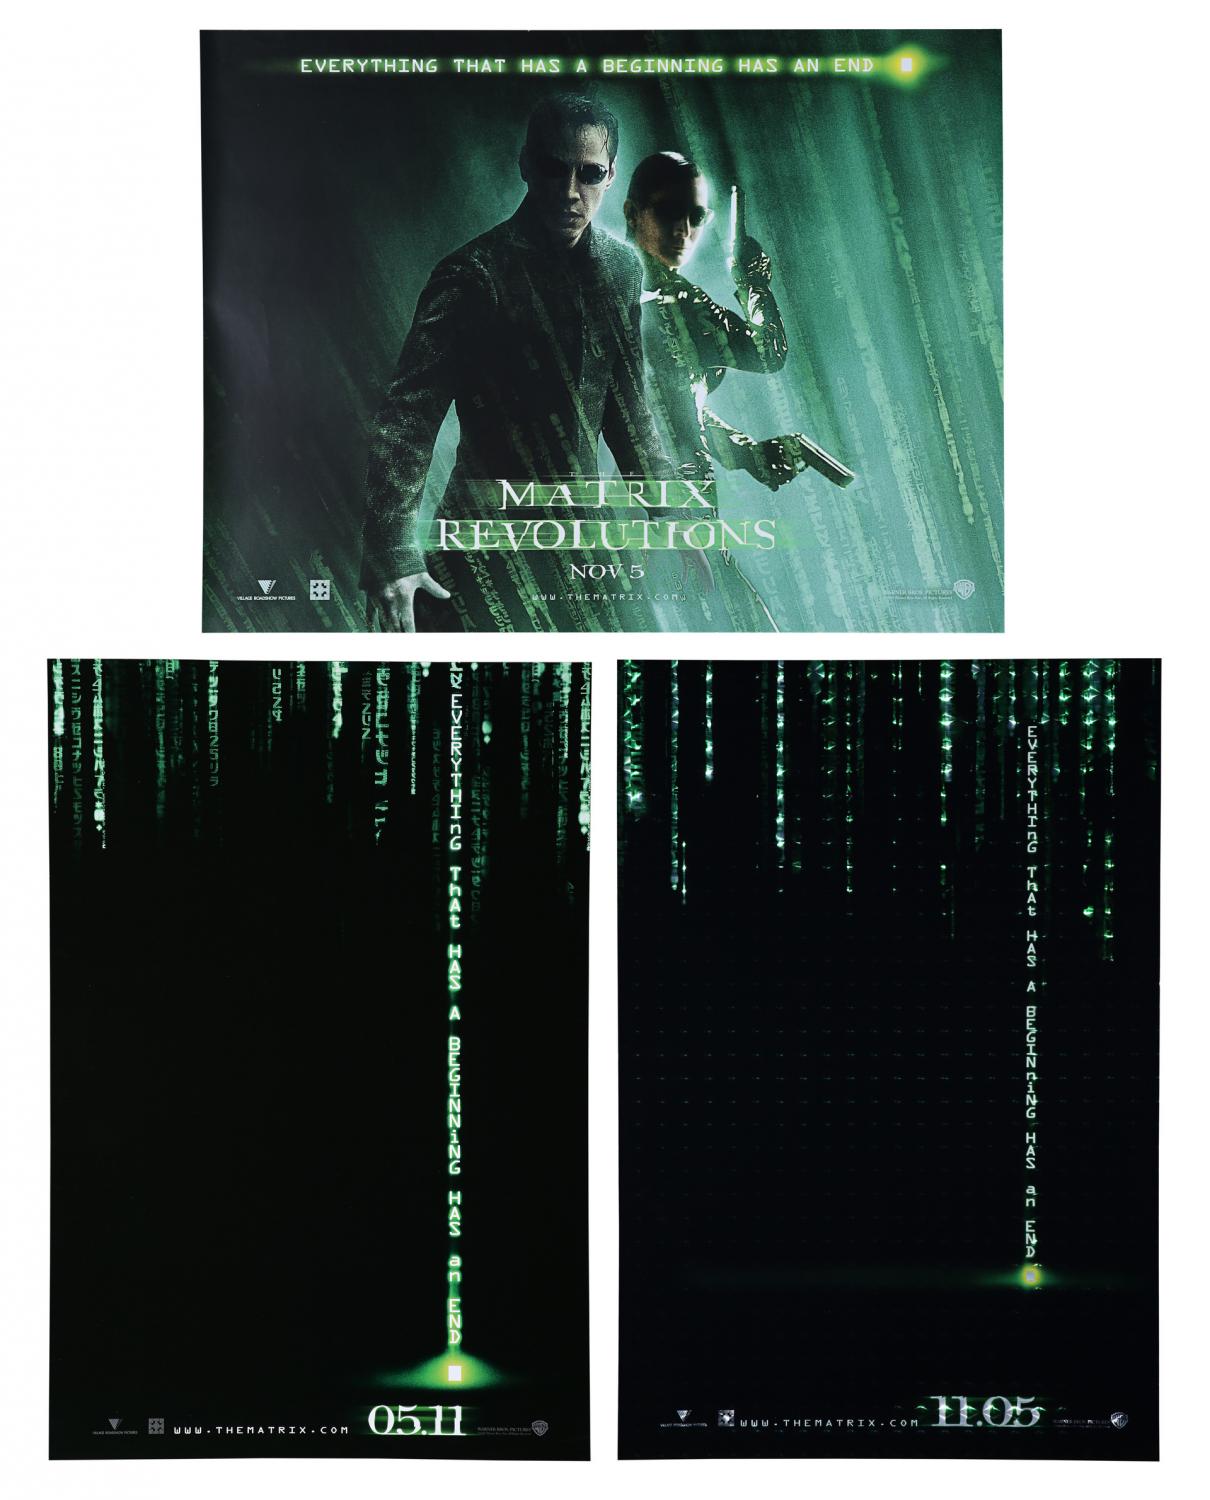 matrix revolutions wallpaper